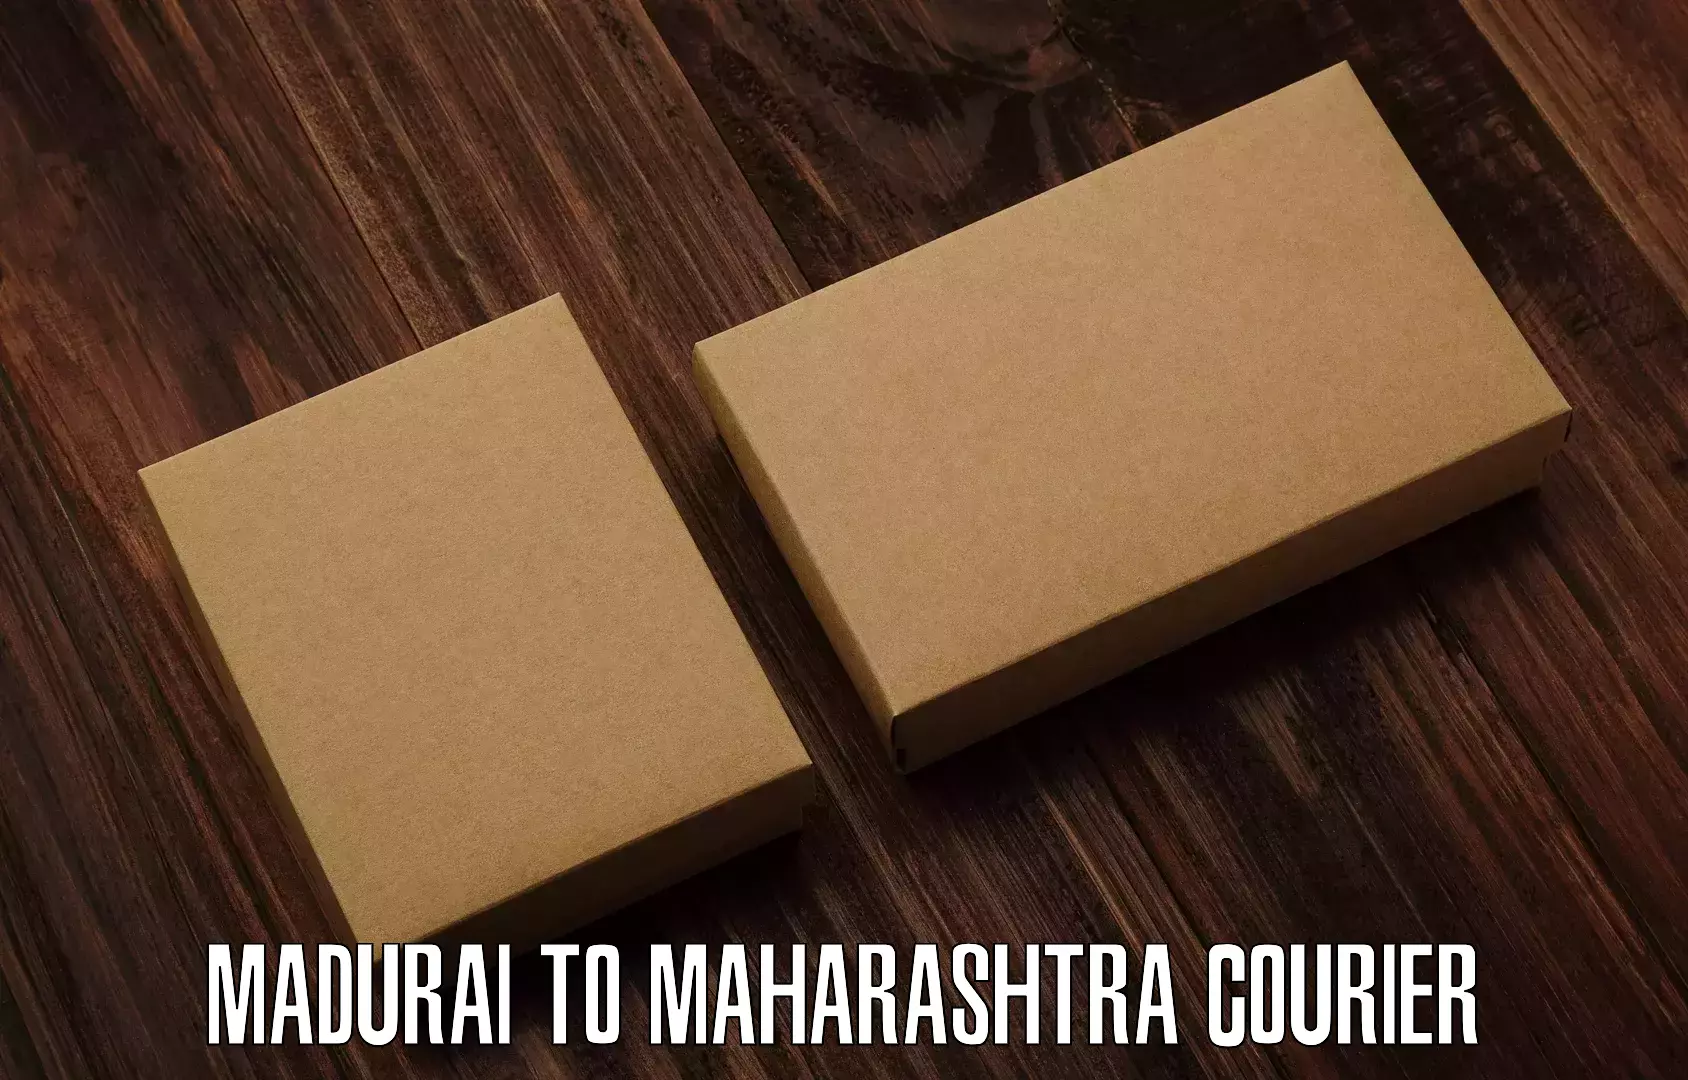 Courier service comparison in Madurai to Nira